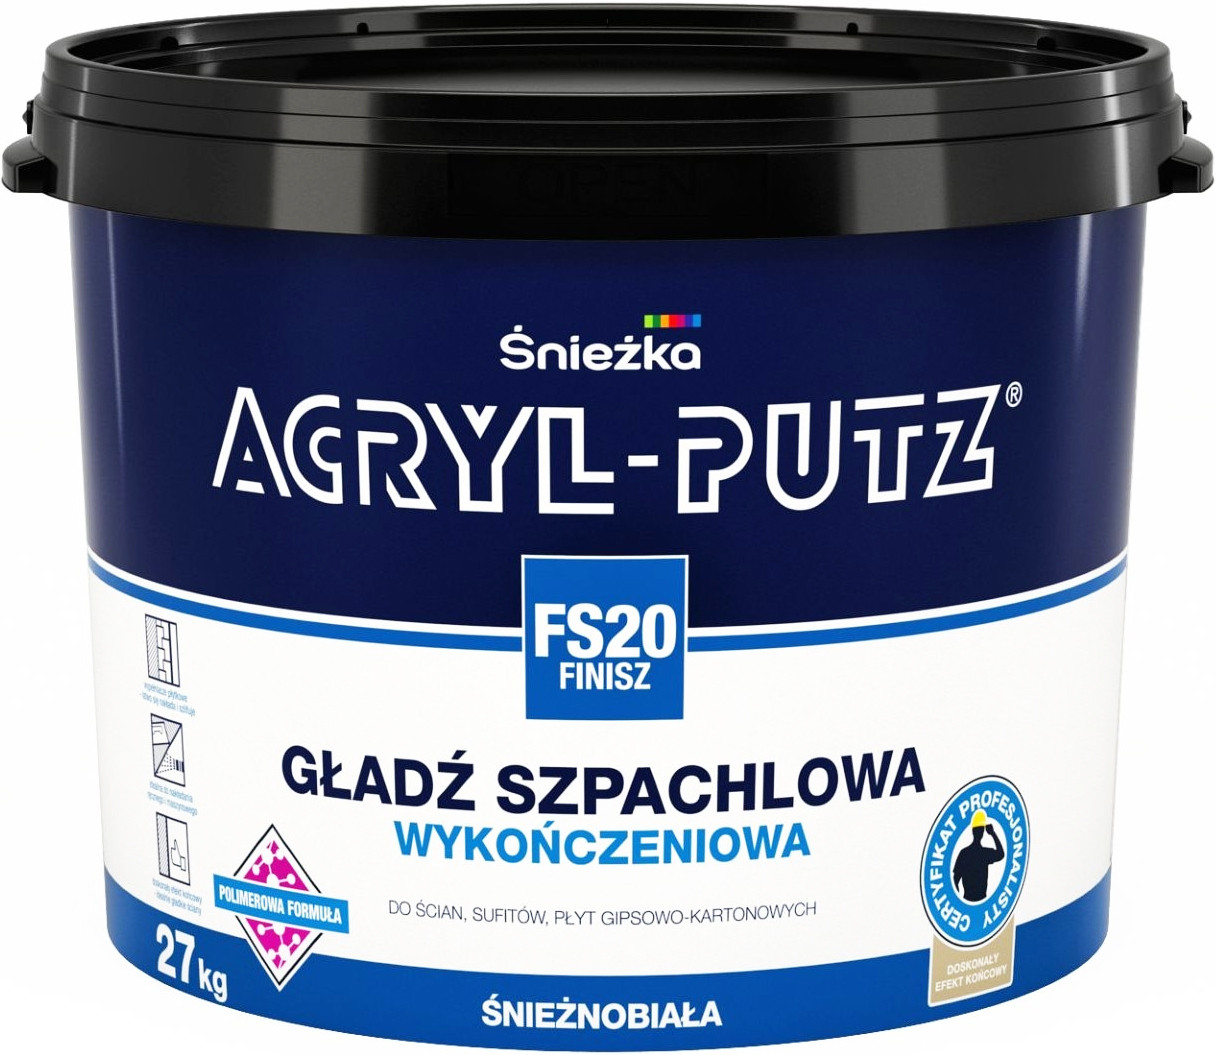 Финишная шпатлевка Sniezka Acryl-Putz FS20  (Польша), 27кг